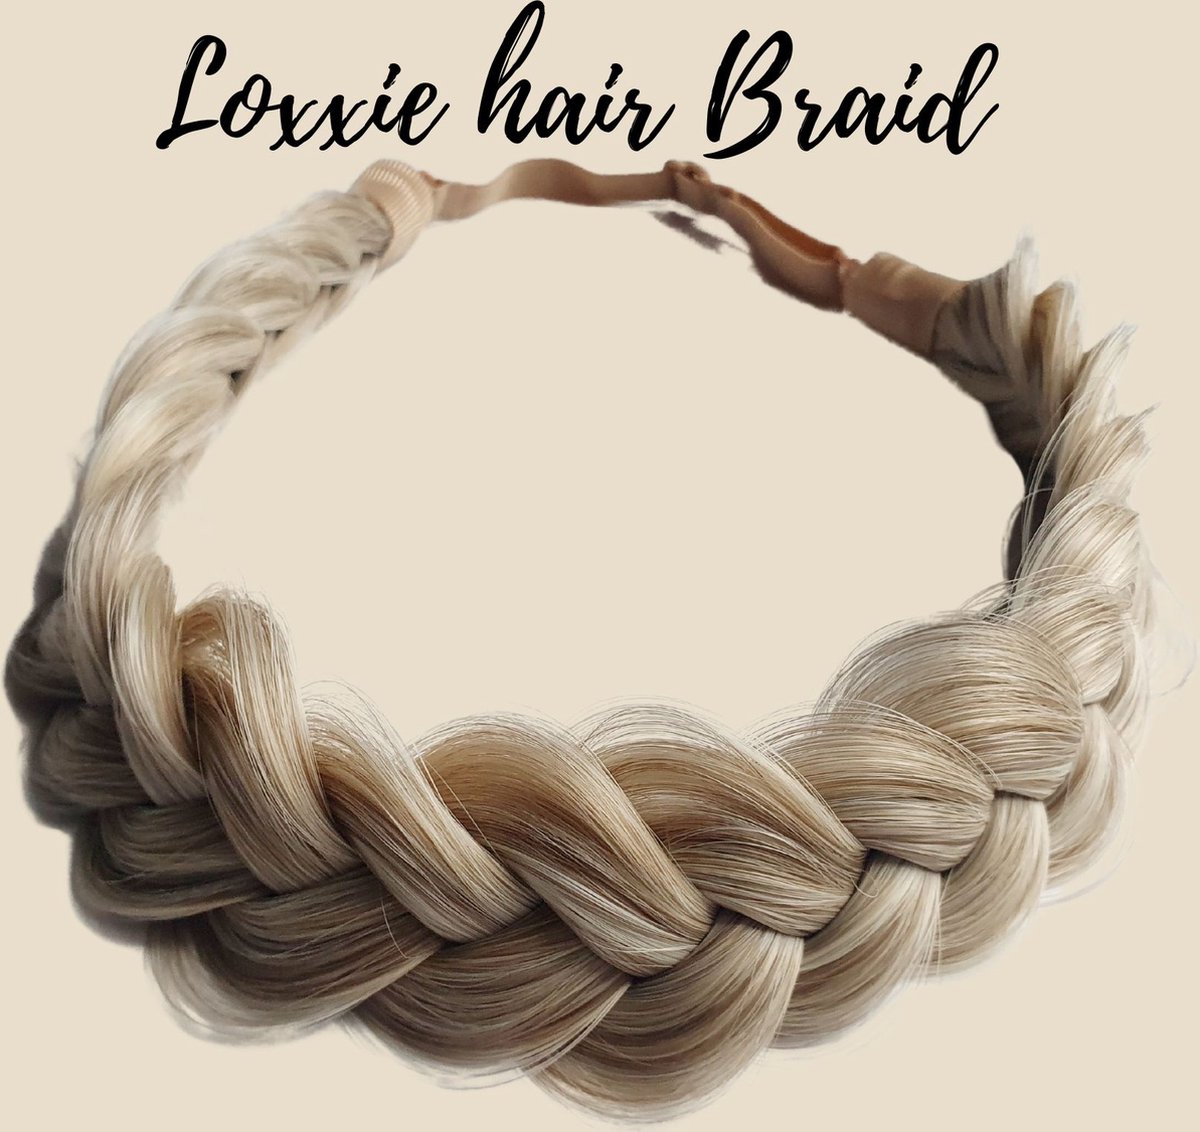 Loxxie® haarband met vlecht haar extensions braid verstelbaar universele pasvorm wit blond licht bruin mix